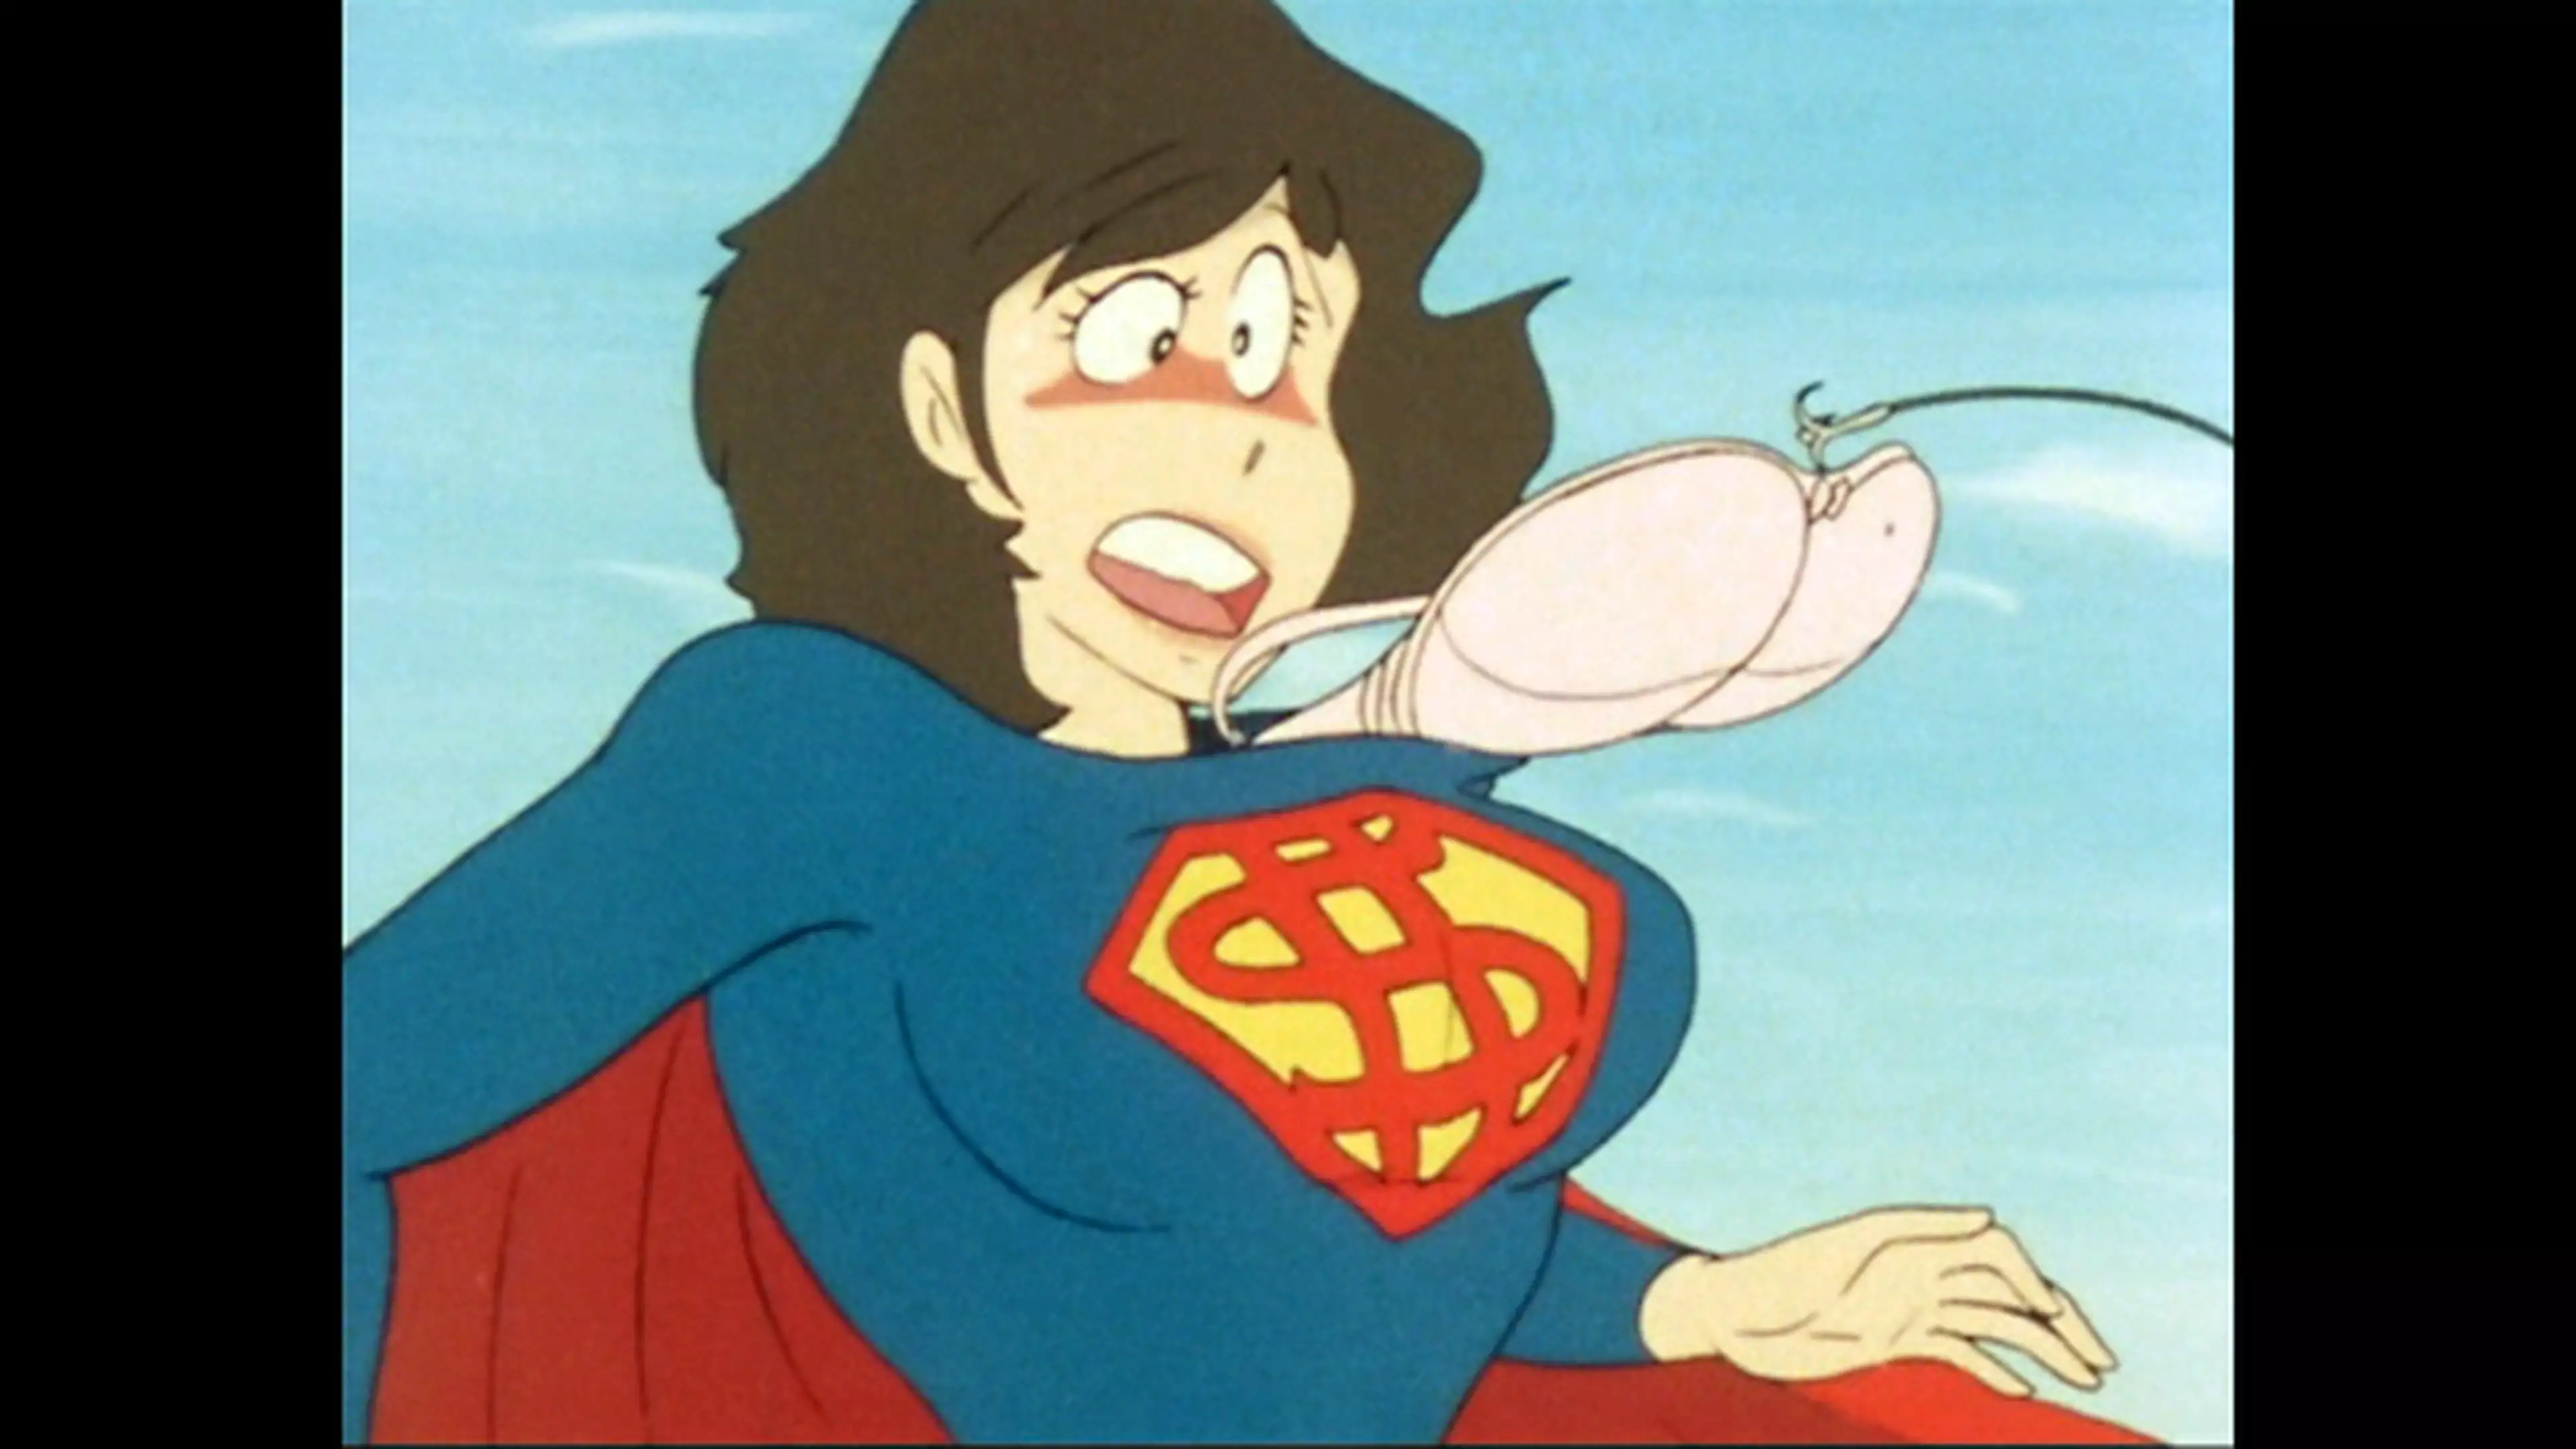 ルパン三世 Part2 第94話 ルパン対スーパーマン アニメ 1977年 の動画視聴 あらすじ U Next